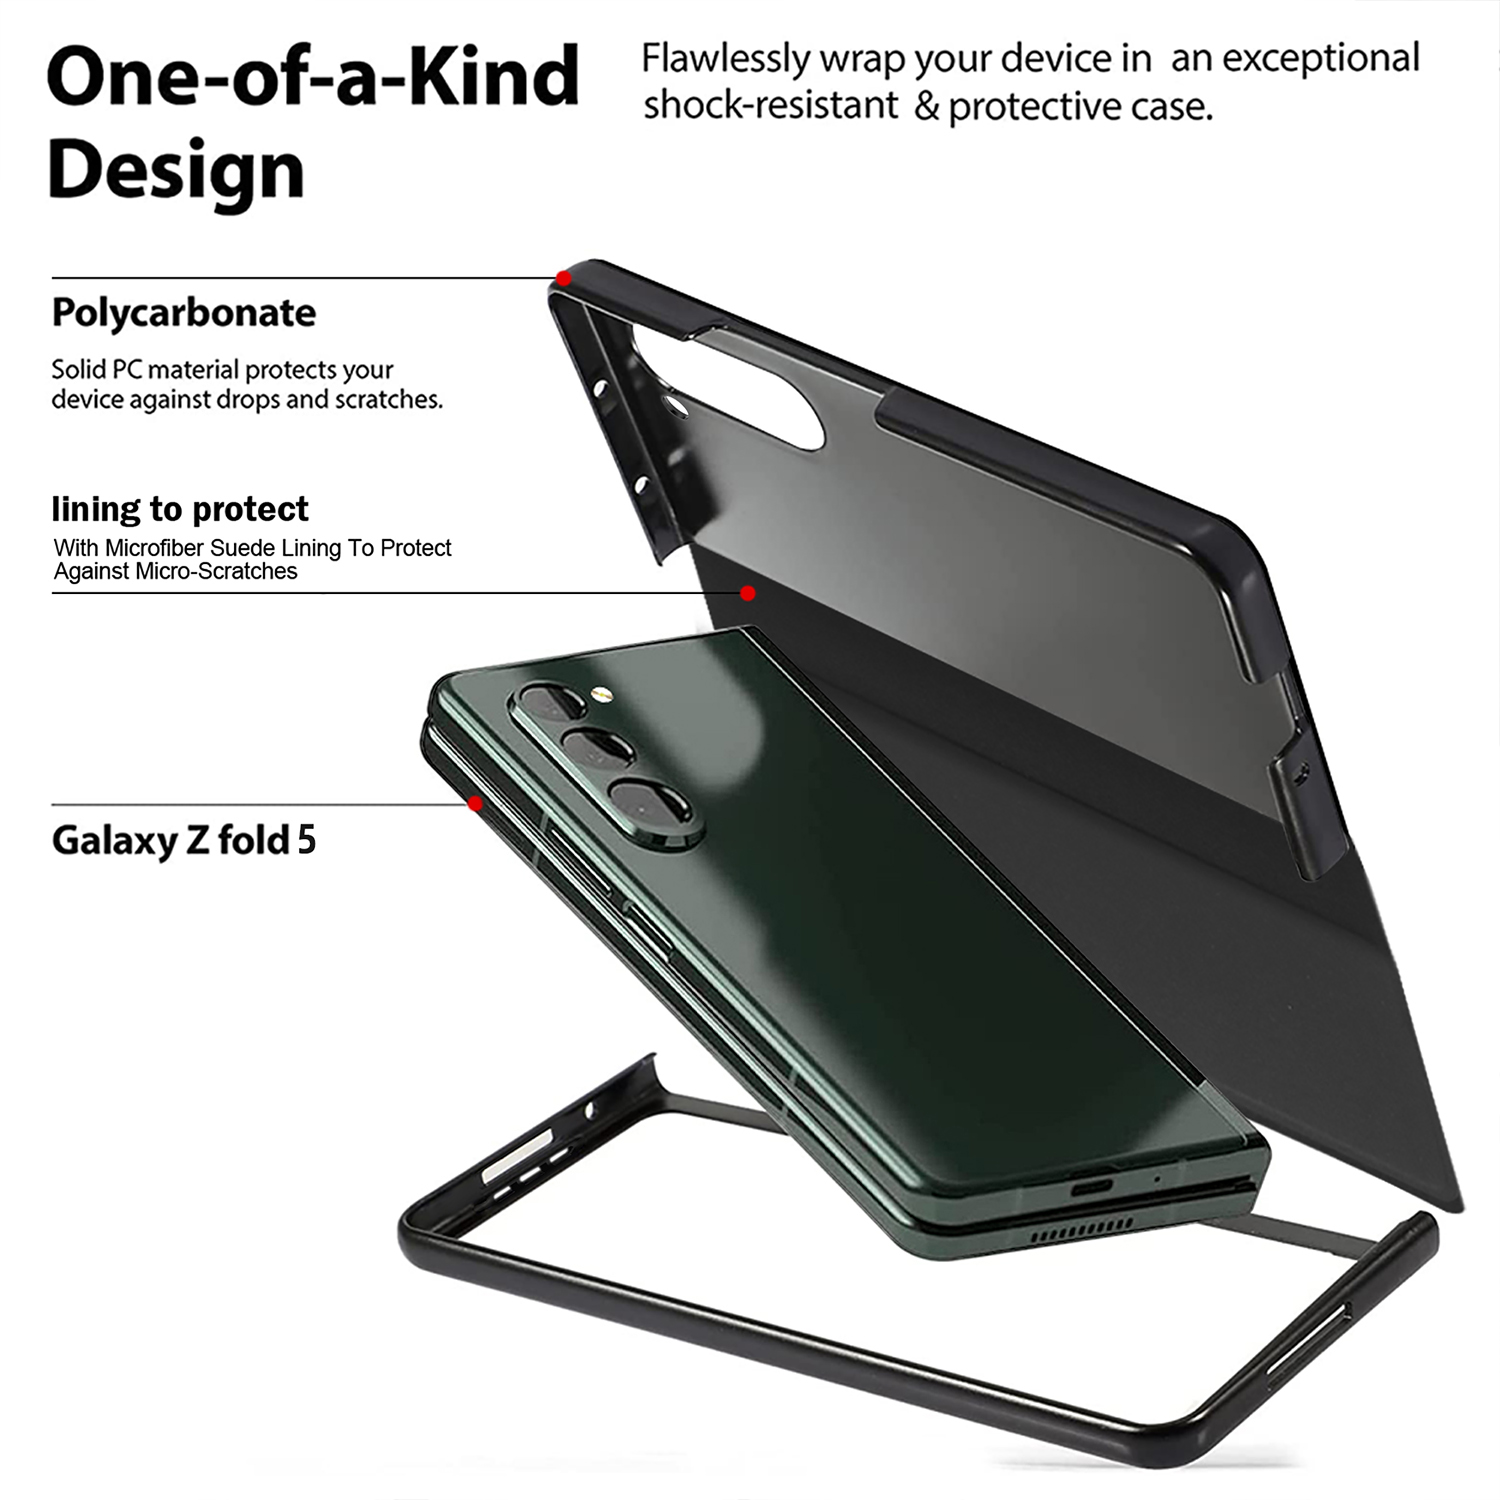 Custodia in pelle libro Samsung Galaxy Z Fold 3 4 5 Fold4 Fold5 Custodia protettiva portapenne nascosta staccabile